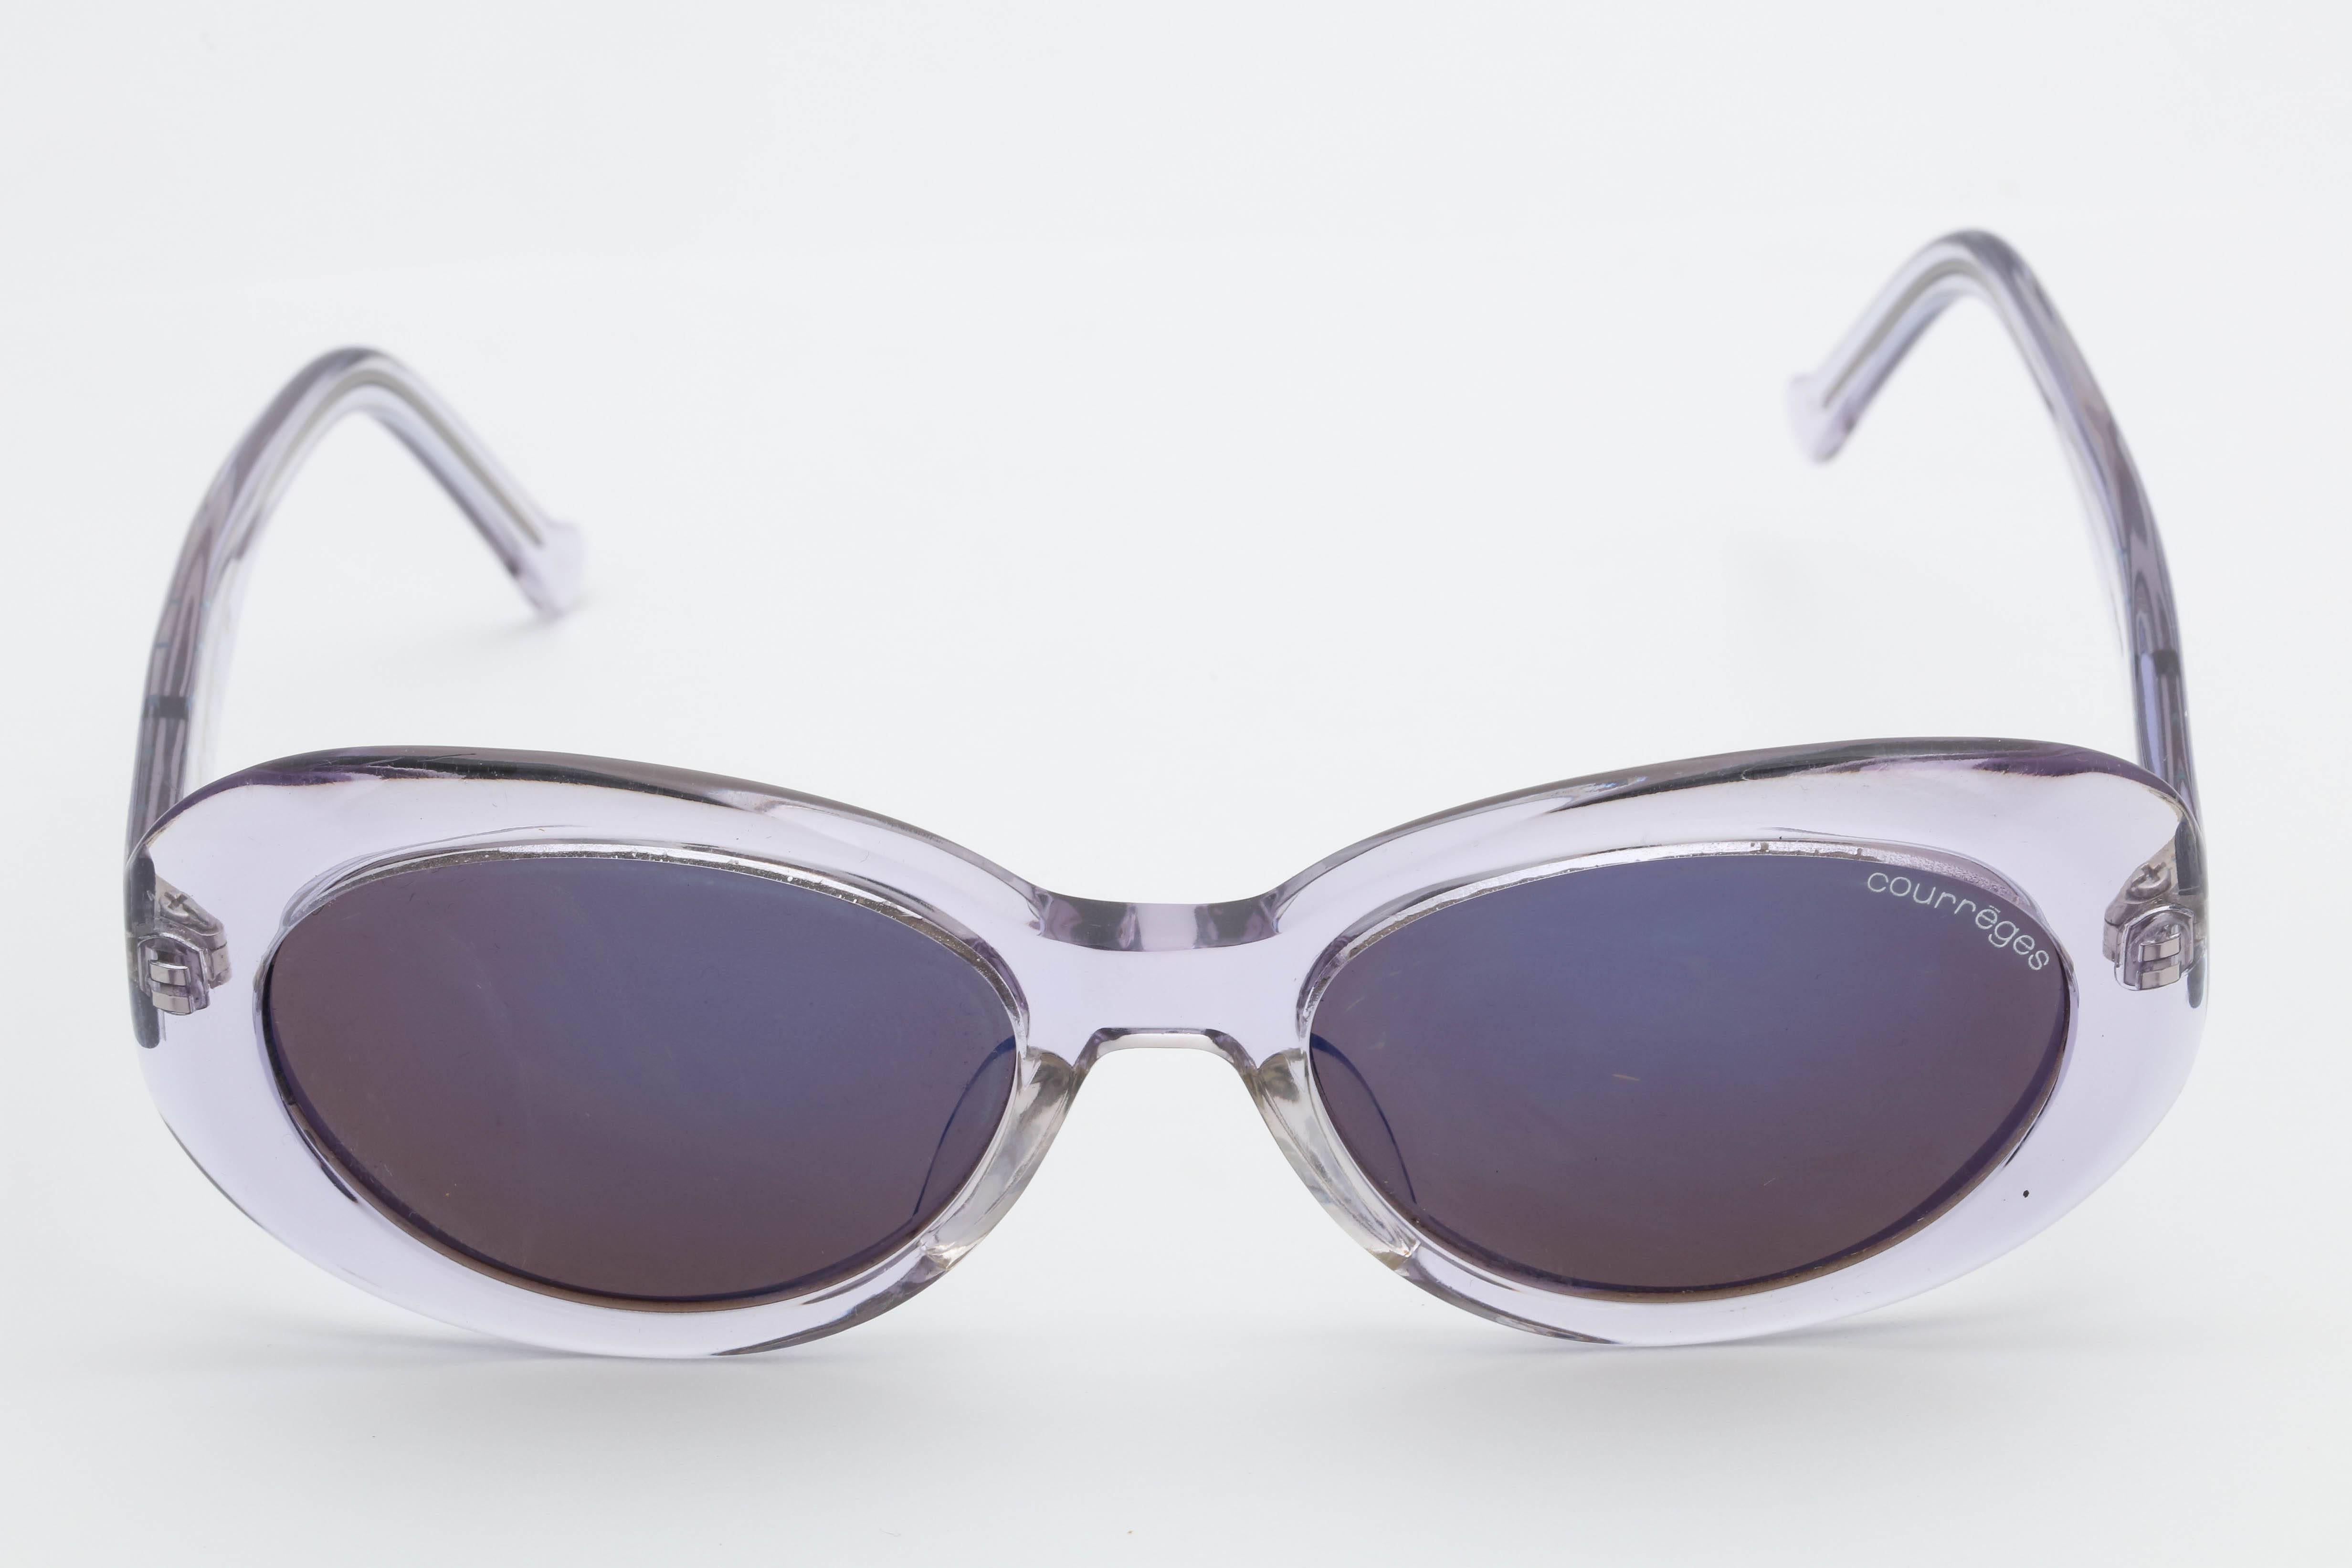 courreges sunglasses vintage